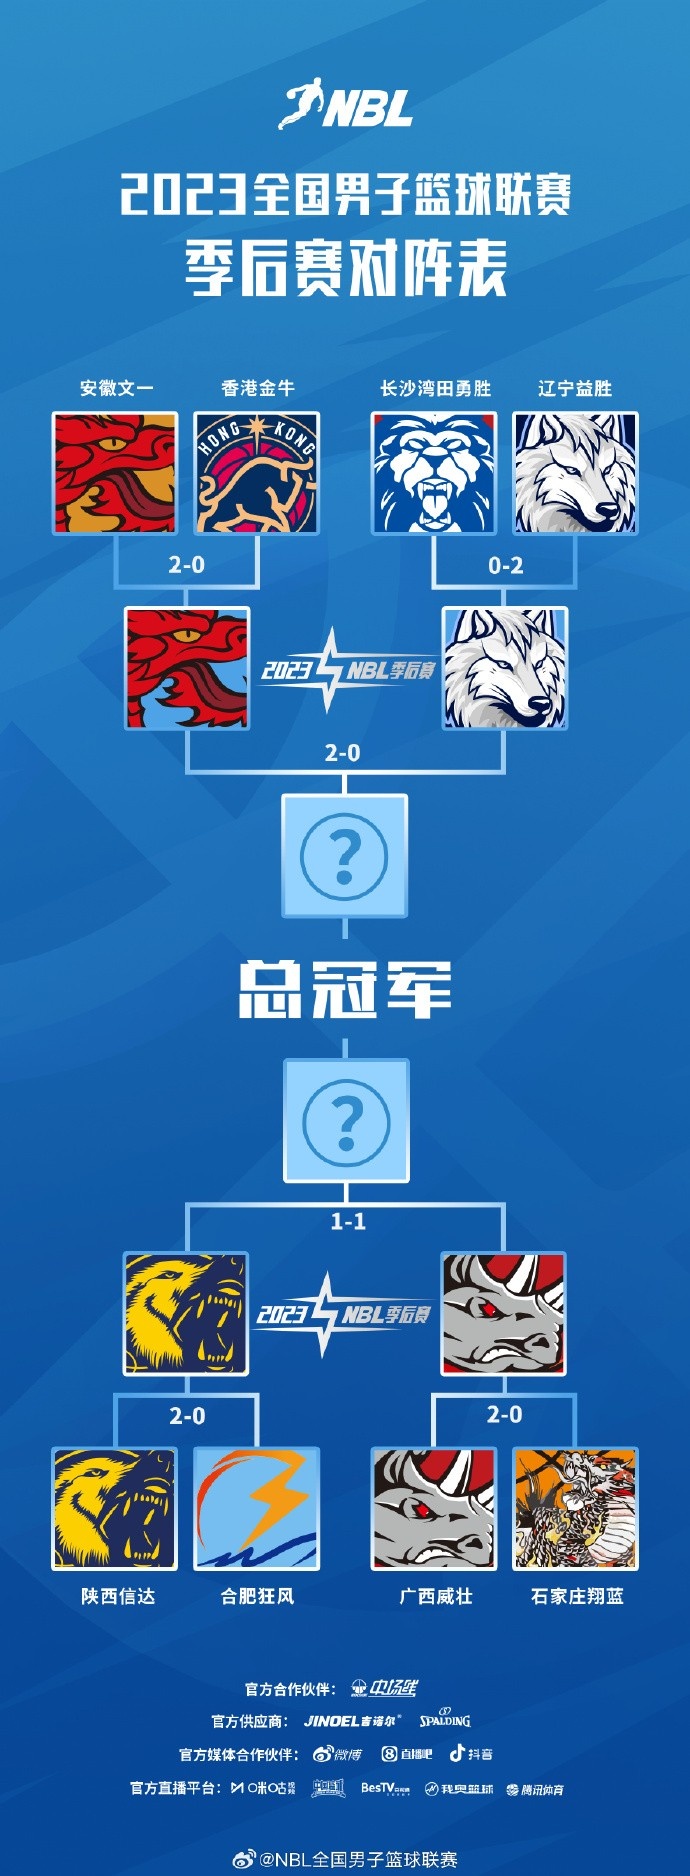 NBL季后赛半决赛G3将于9月13日及14日晚举行 广西陕西